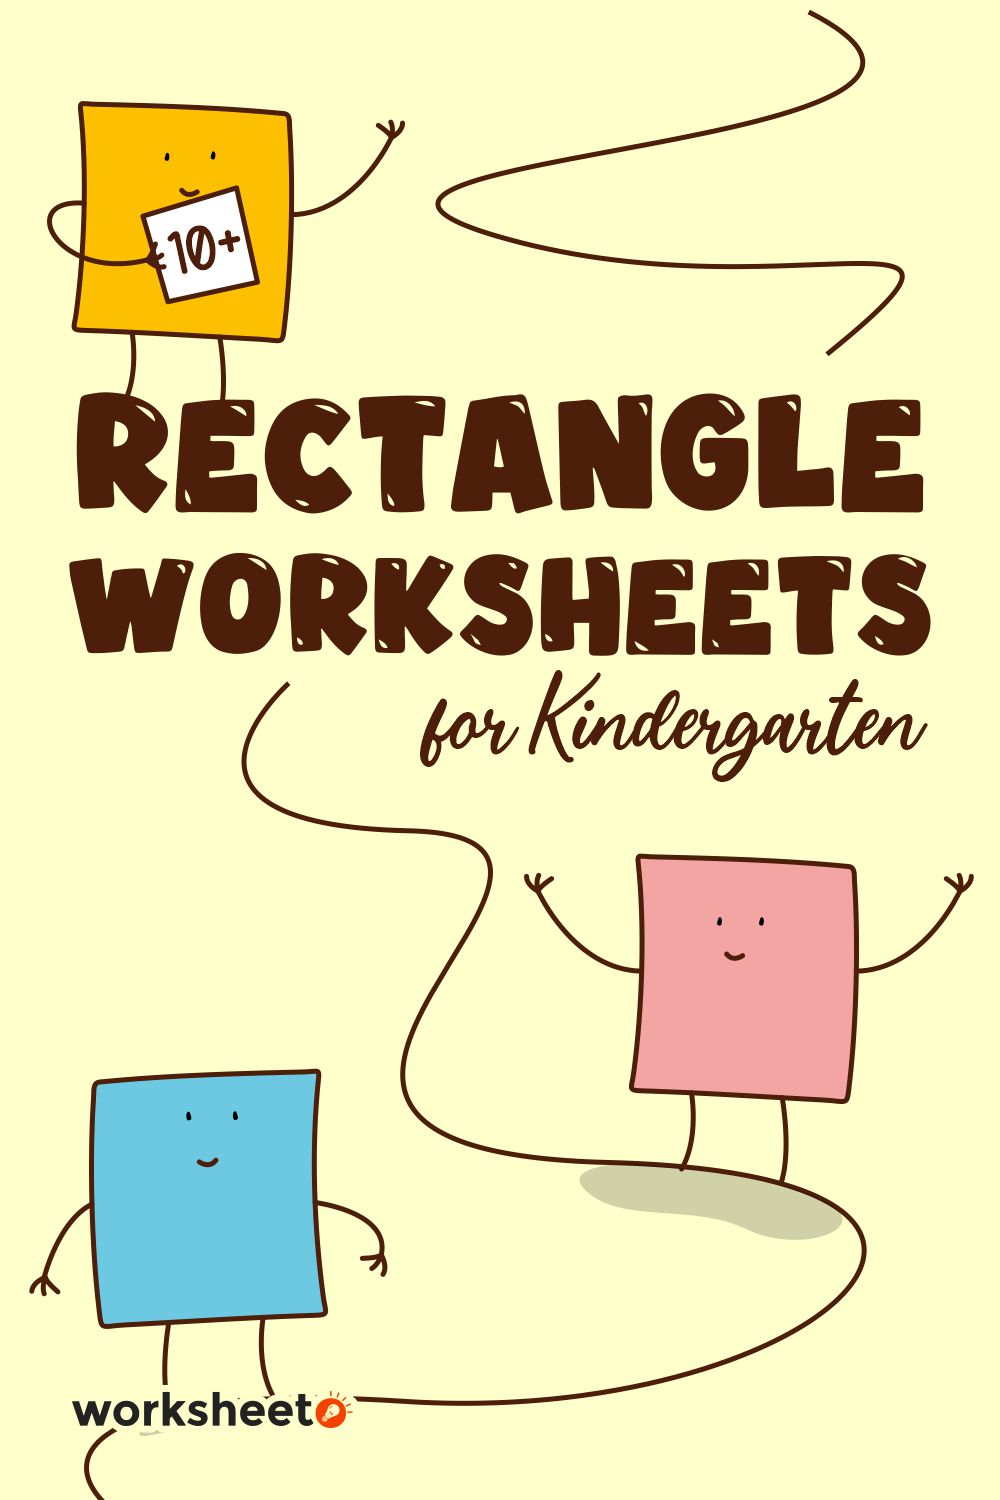 8 Images of Rectangle Worksheets For Kindergarten